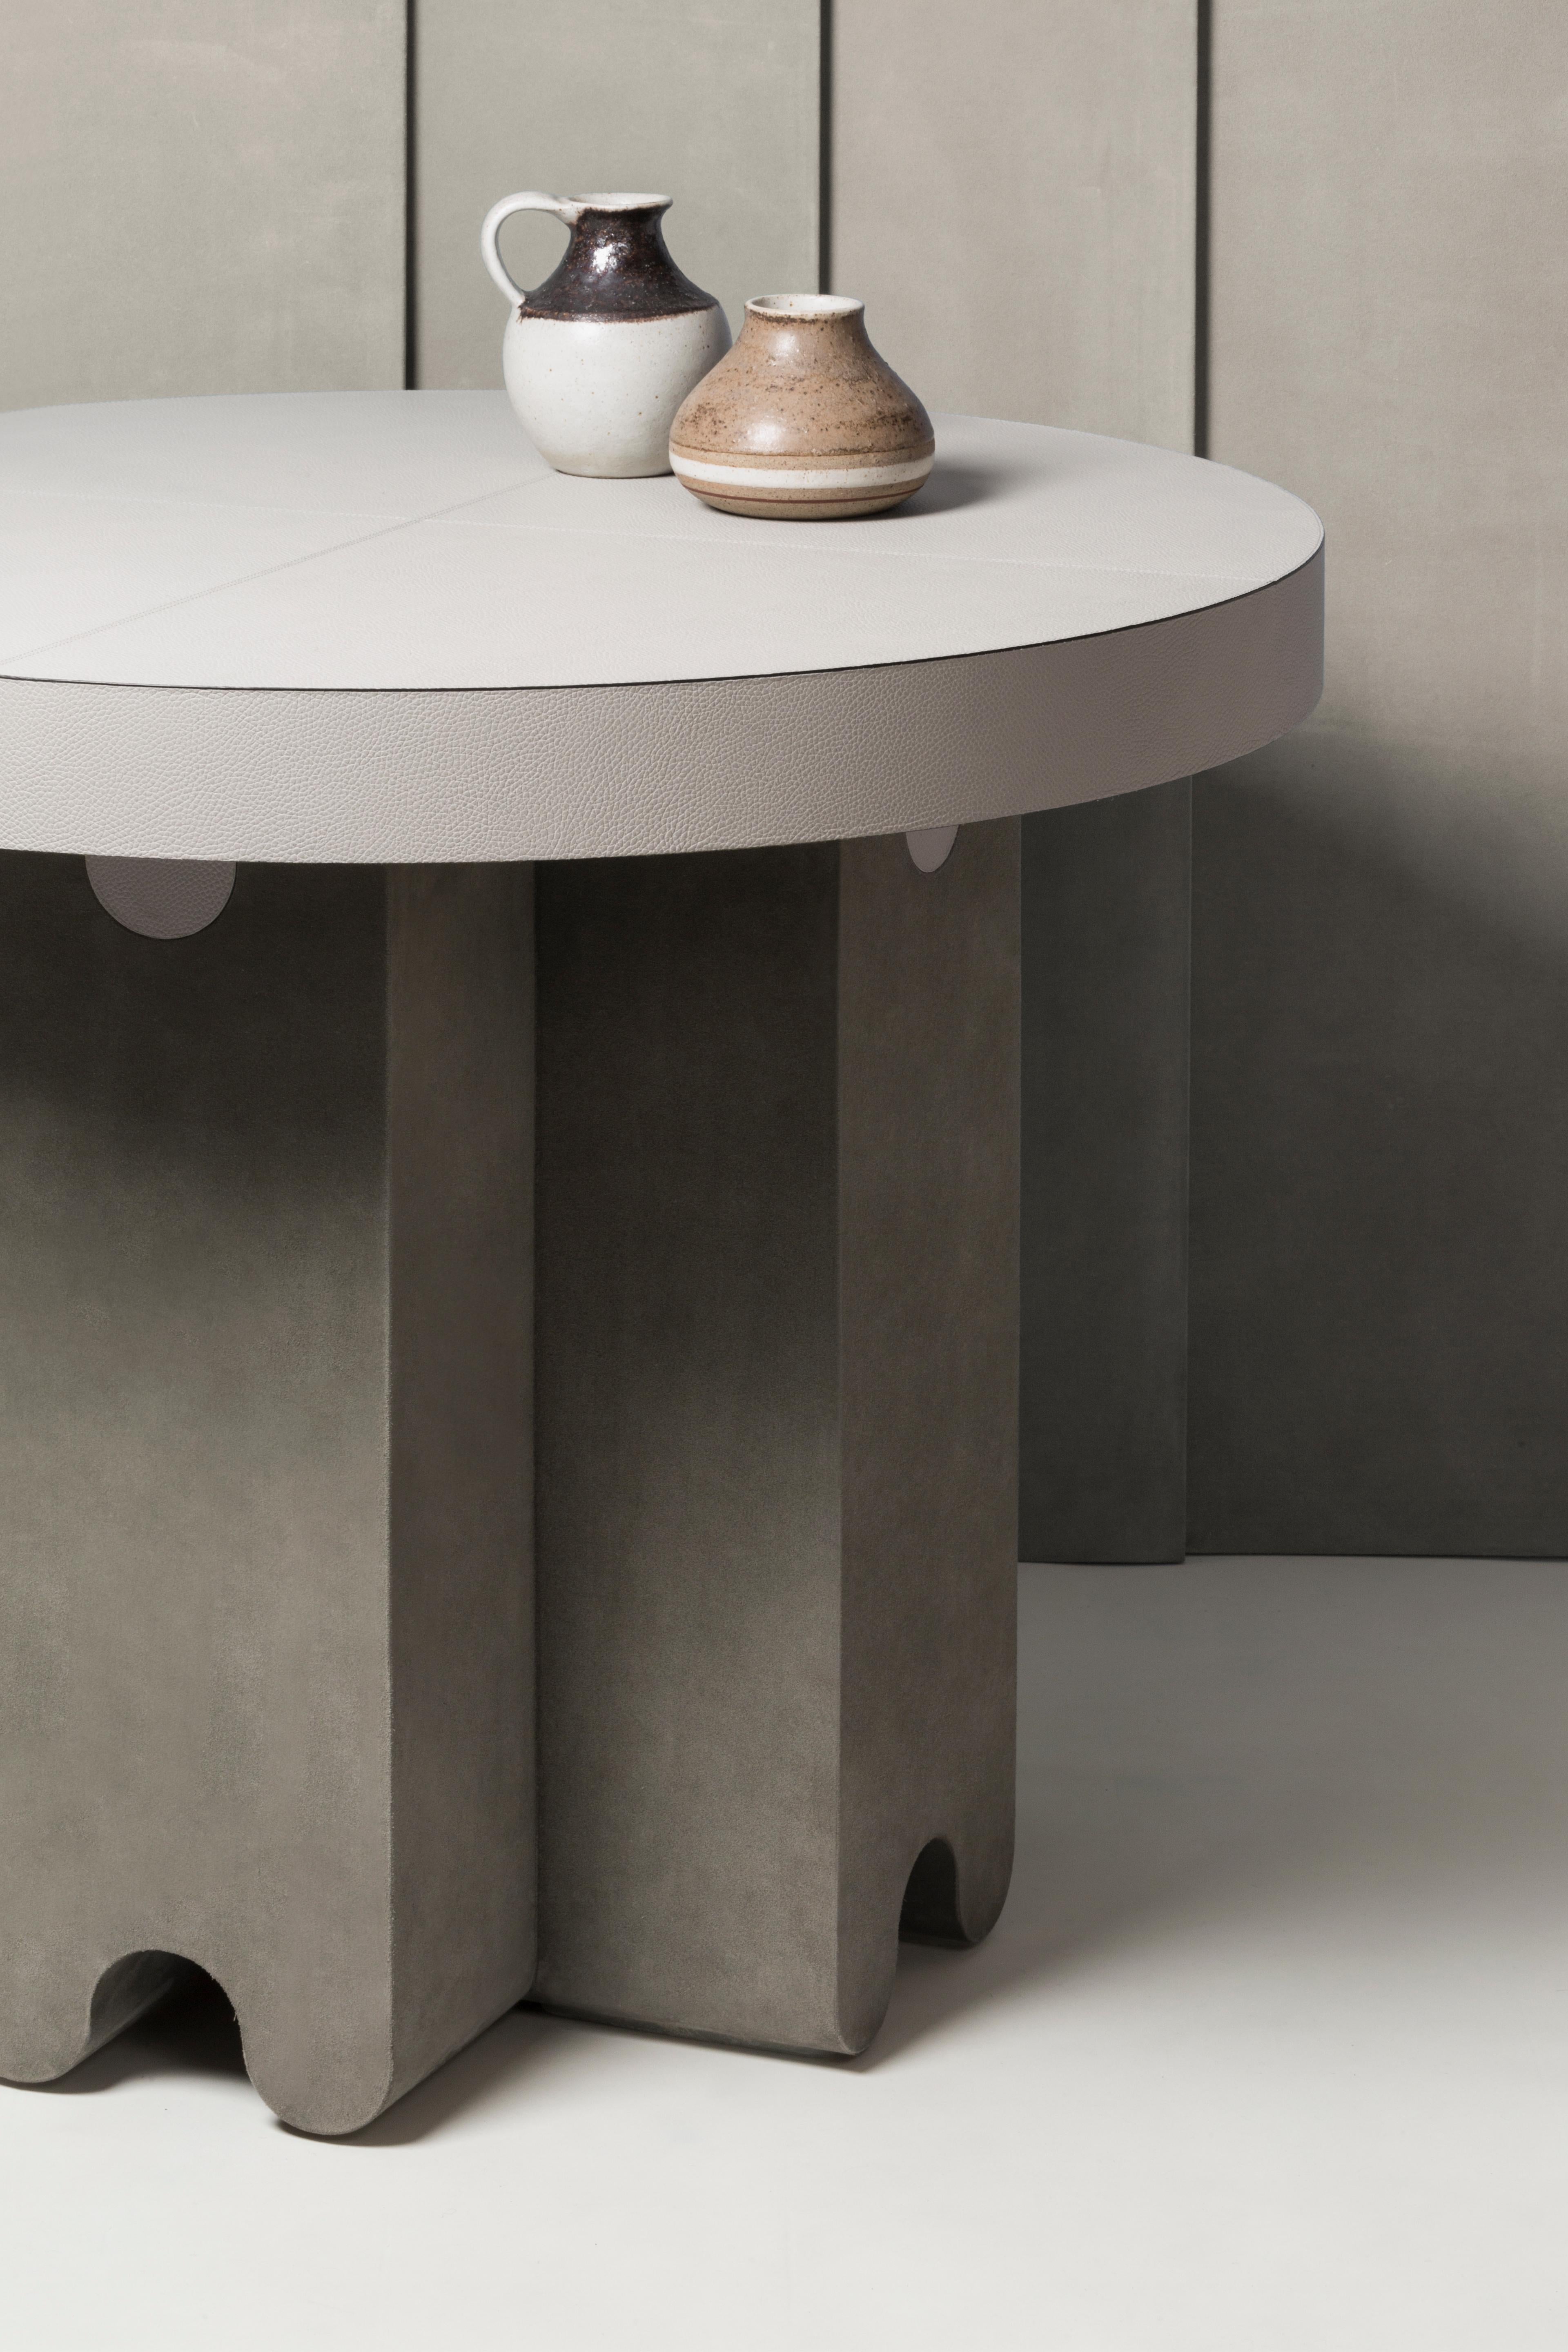 Runder Tisch aus Ossicle-Leder -- Francesco Balzano x Giobagnara

Das Oberteil ist nur in bedrucktem Kalbsleder, Wildleder oder Nappa erhältlich; die Beine sind nur in Wildleder erhältlich. Das Bild zeigt den Tisch mit einer Platte aus bedrucktem